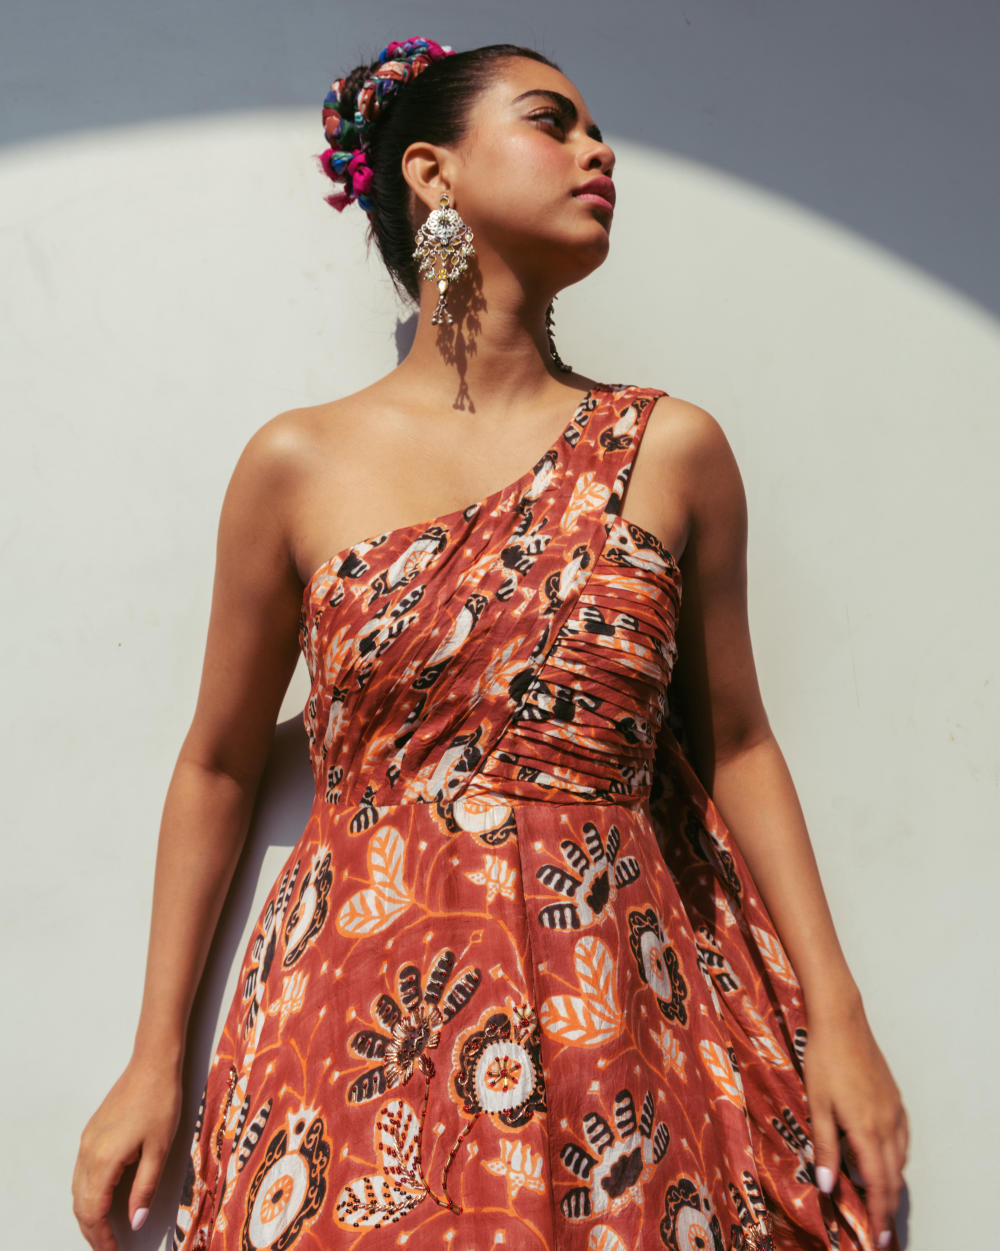 Rani Silk Dress Fashion JodiLife